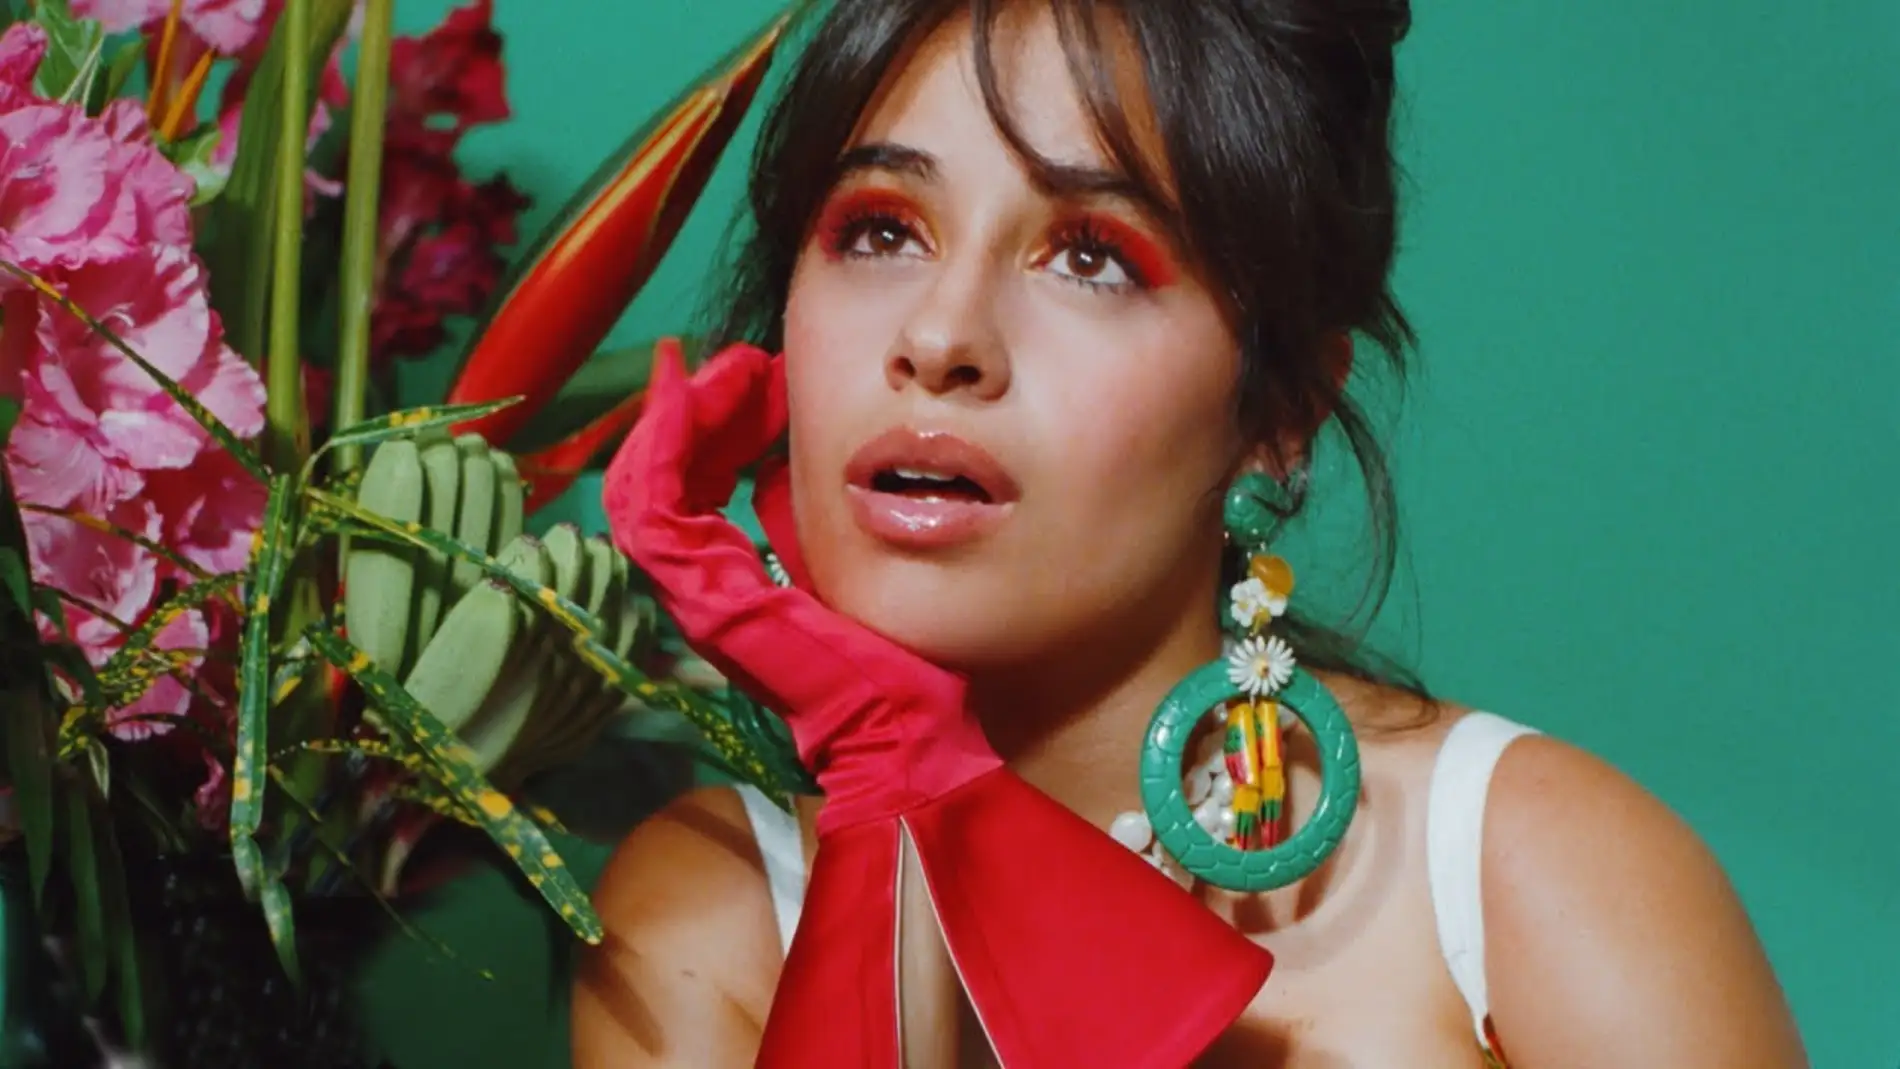 Llega Don't Go Yet, el nuevo tema de Camila Cabello